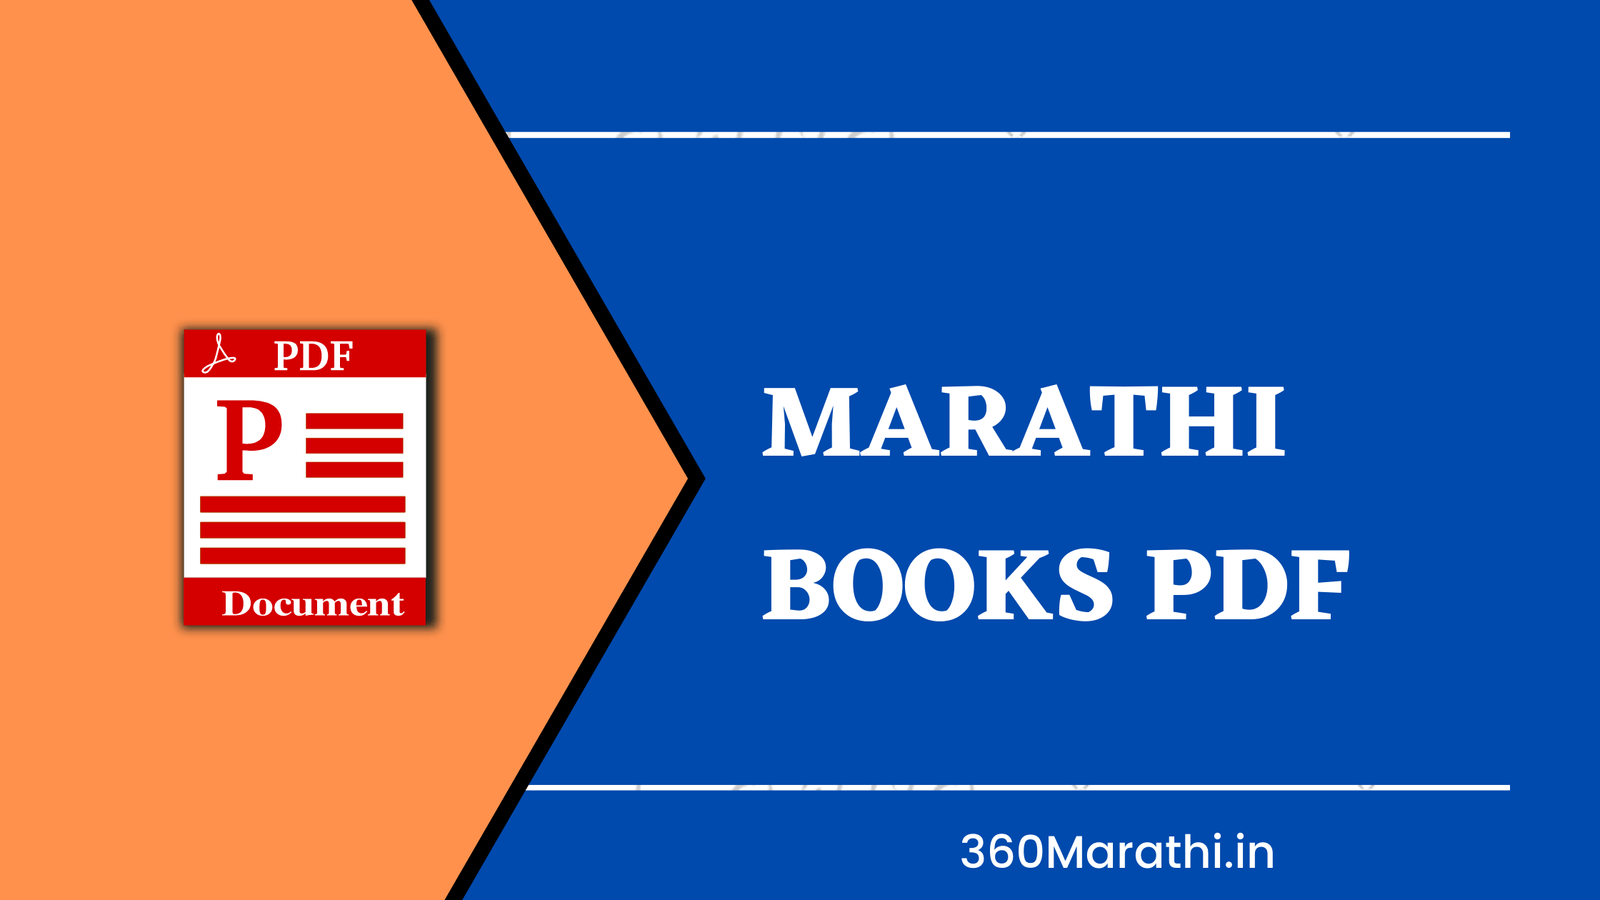 Marathi Books PDF